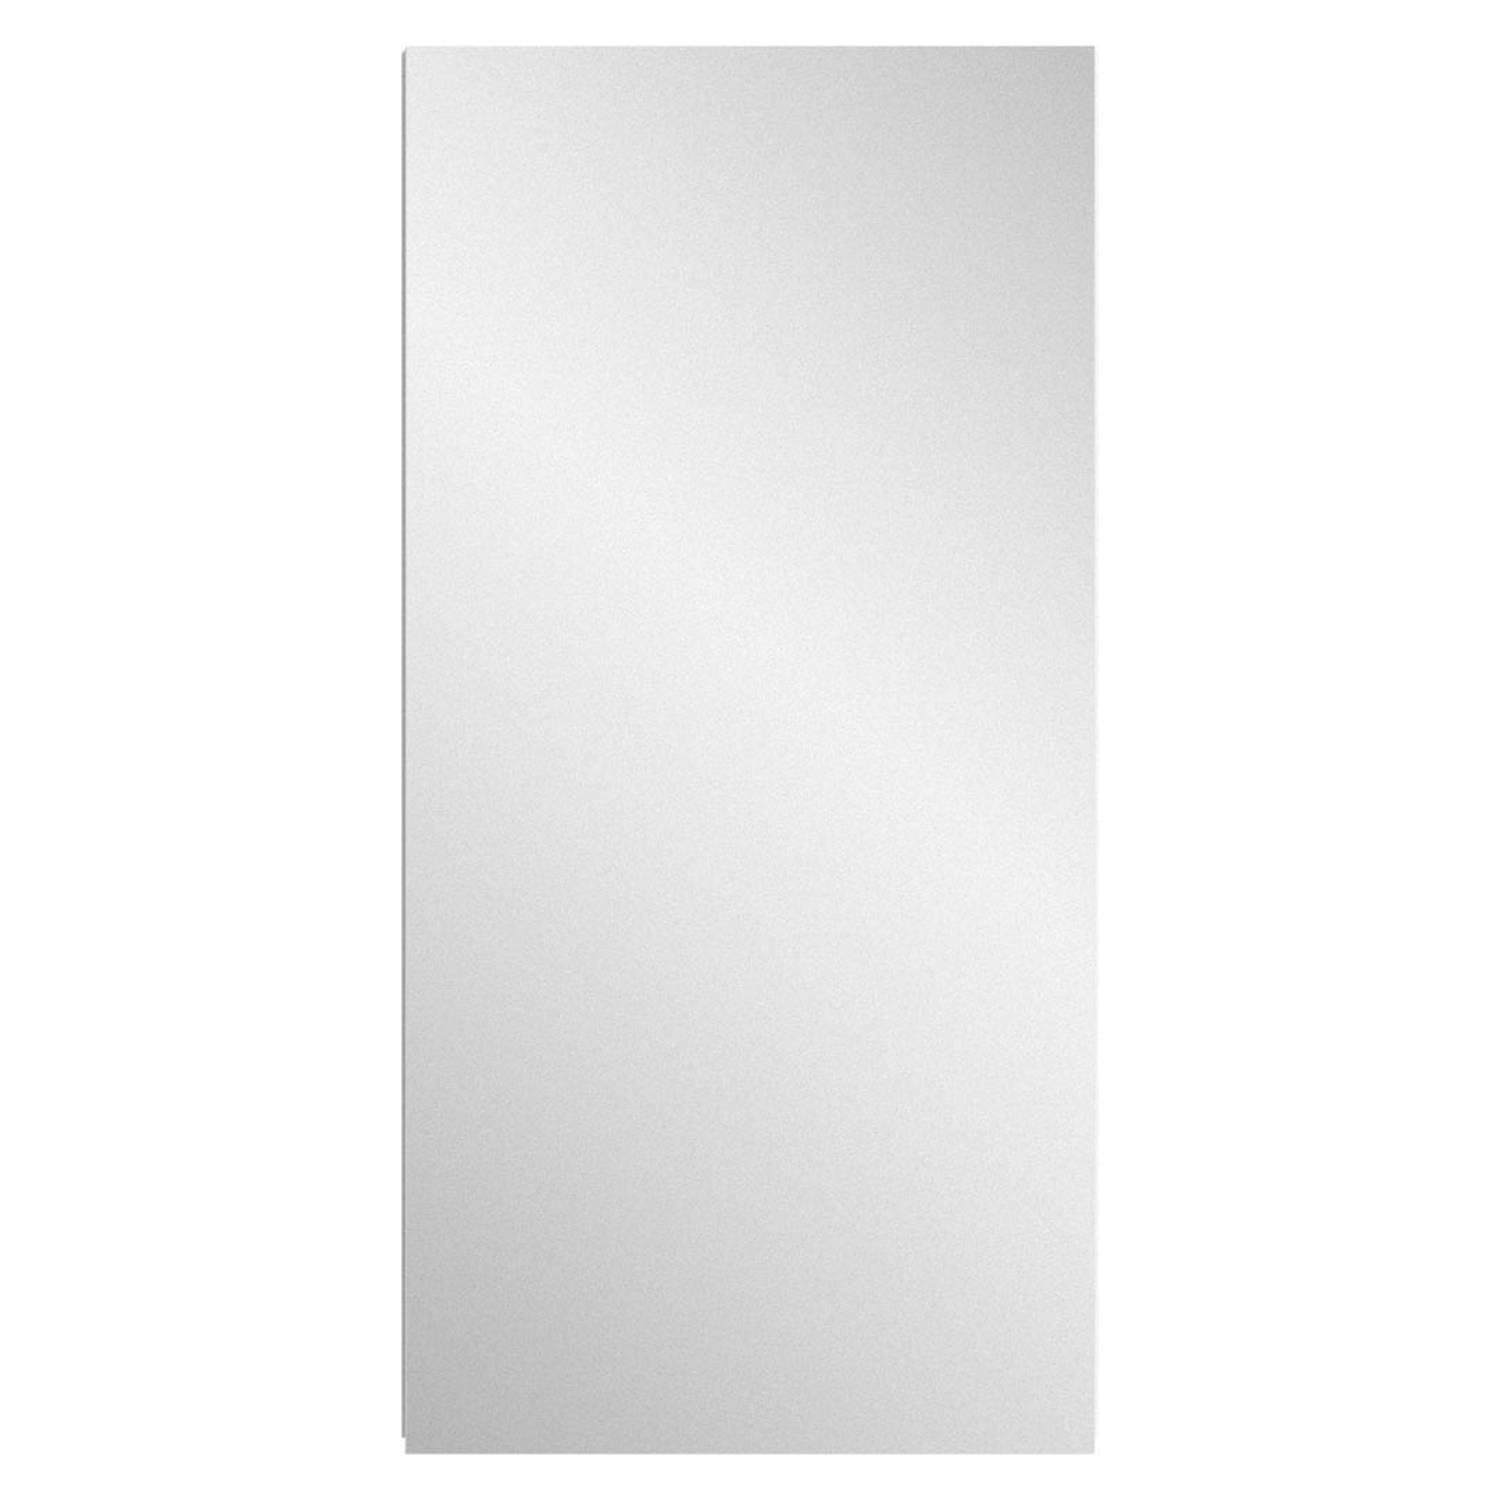 Vira spiegelkast 1 deur hoog glans wit,wit.